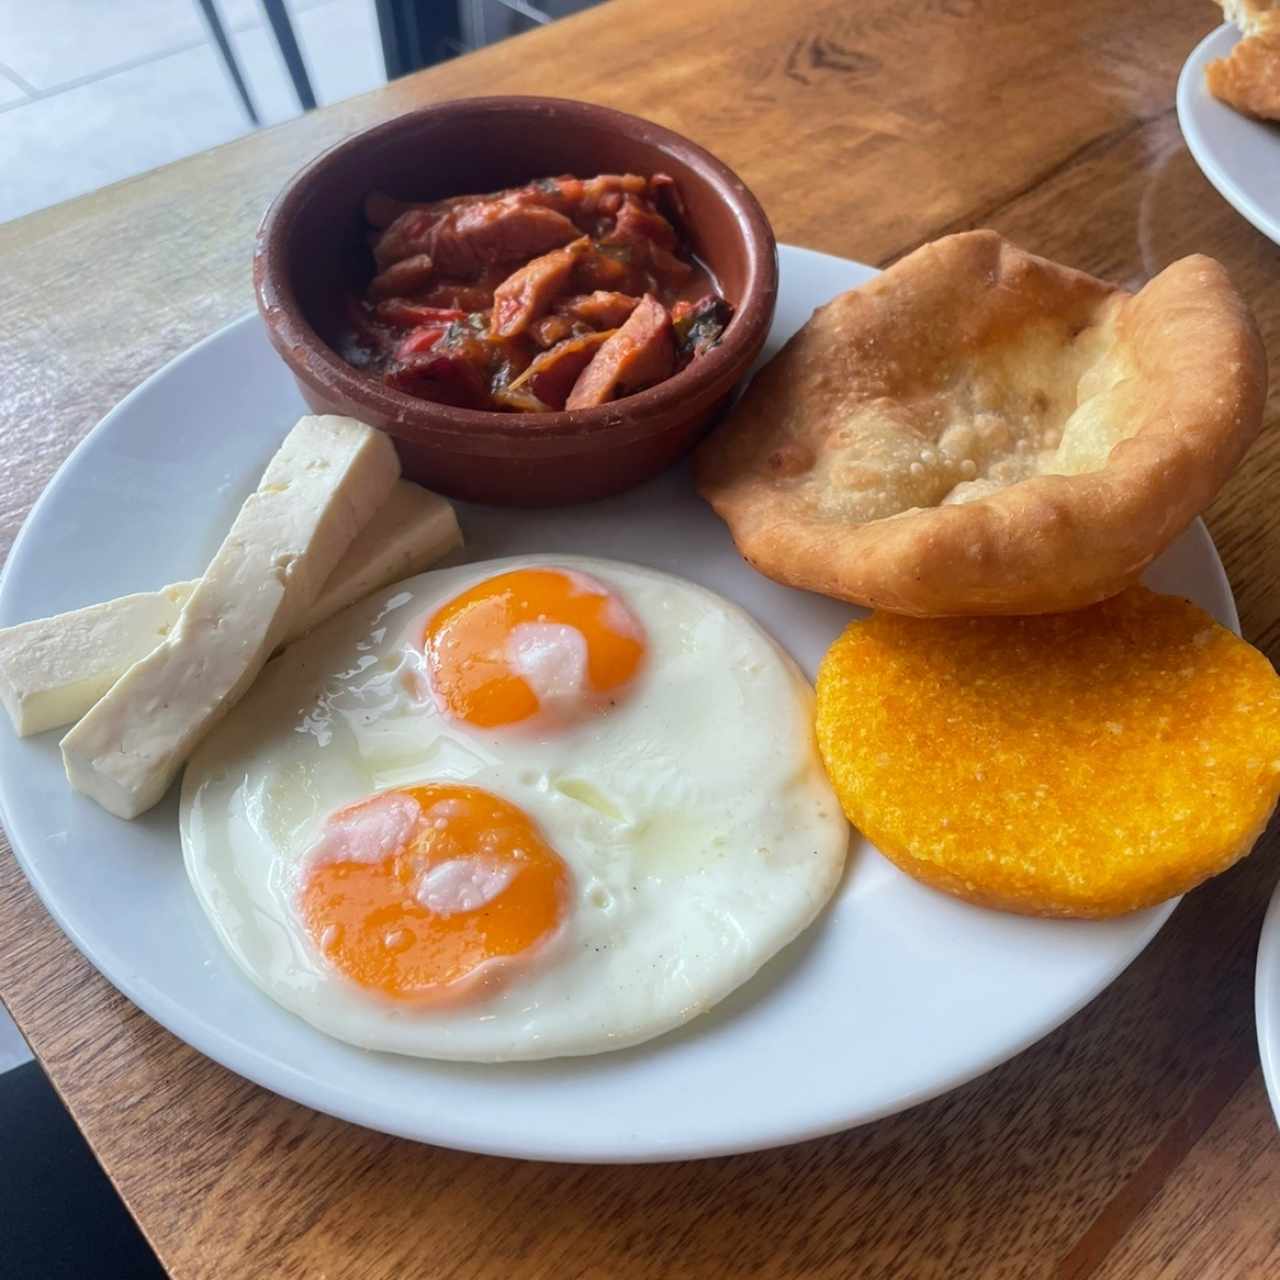 Desayuno - El Panameño 2.0